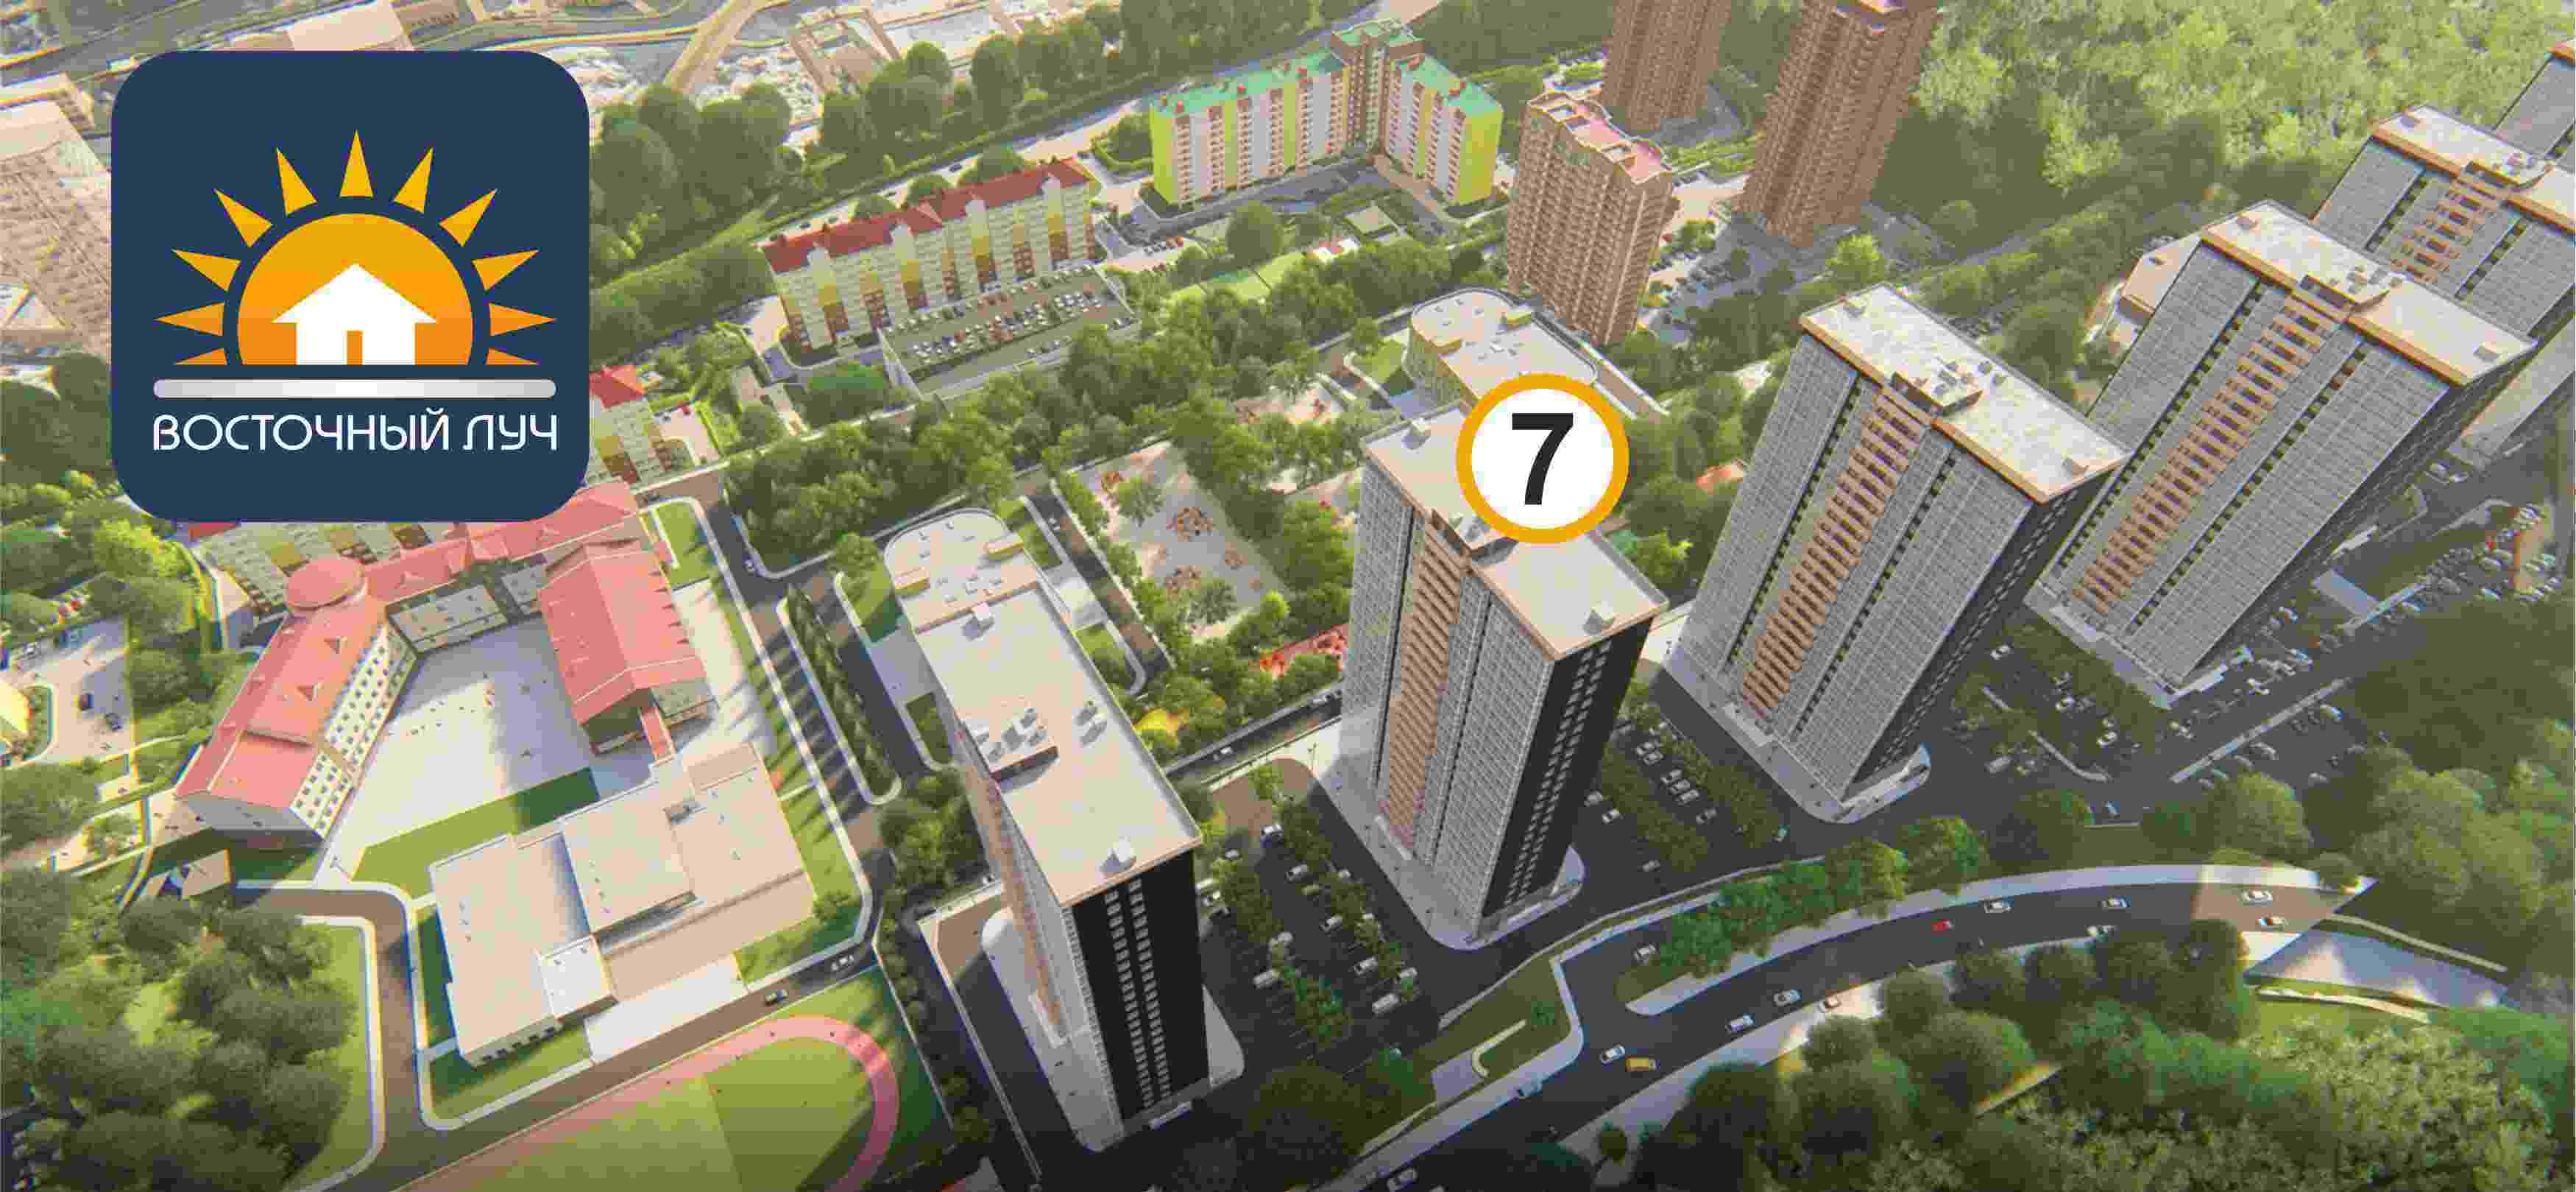 ЖК Восточный луч 1 очередь, строение 7, ввод в эксплуатацию: I кв. 2024, продажа квартир - 0 кв.